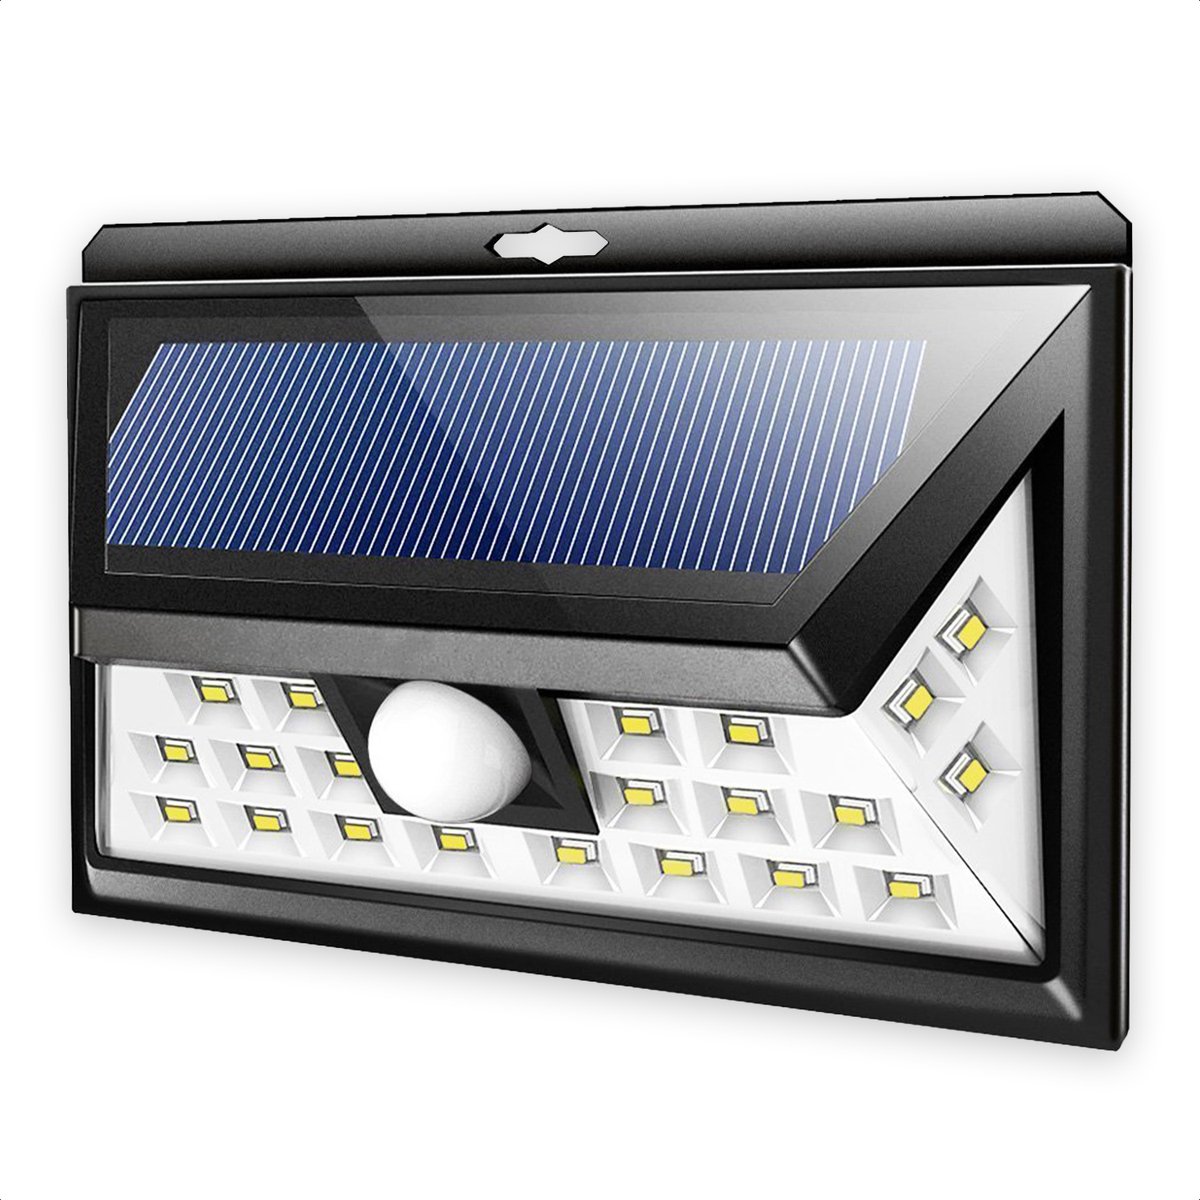 SensaHome Solar Lamp 24 Led met Bewegingssensor en Nachtsensor - Buitenverlichting - Slimme lamp - Tuinverlichting op Zonne-energie - IP65 Waterdicht - Voor Tuin/Wand/Oprit